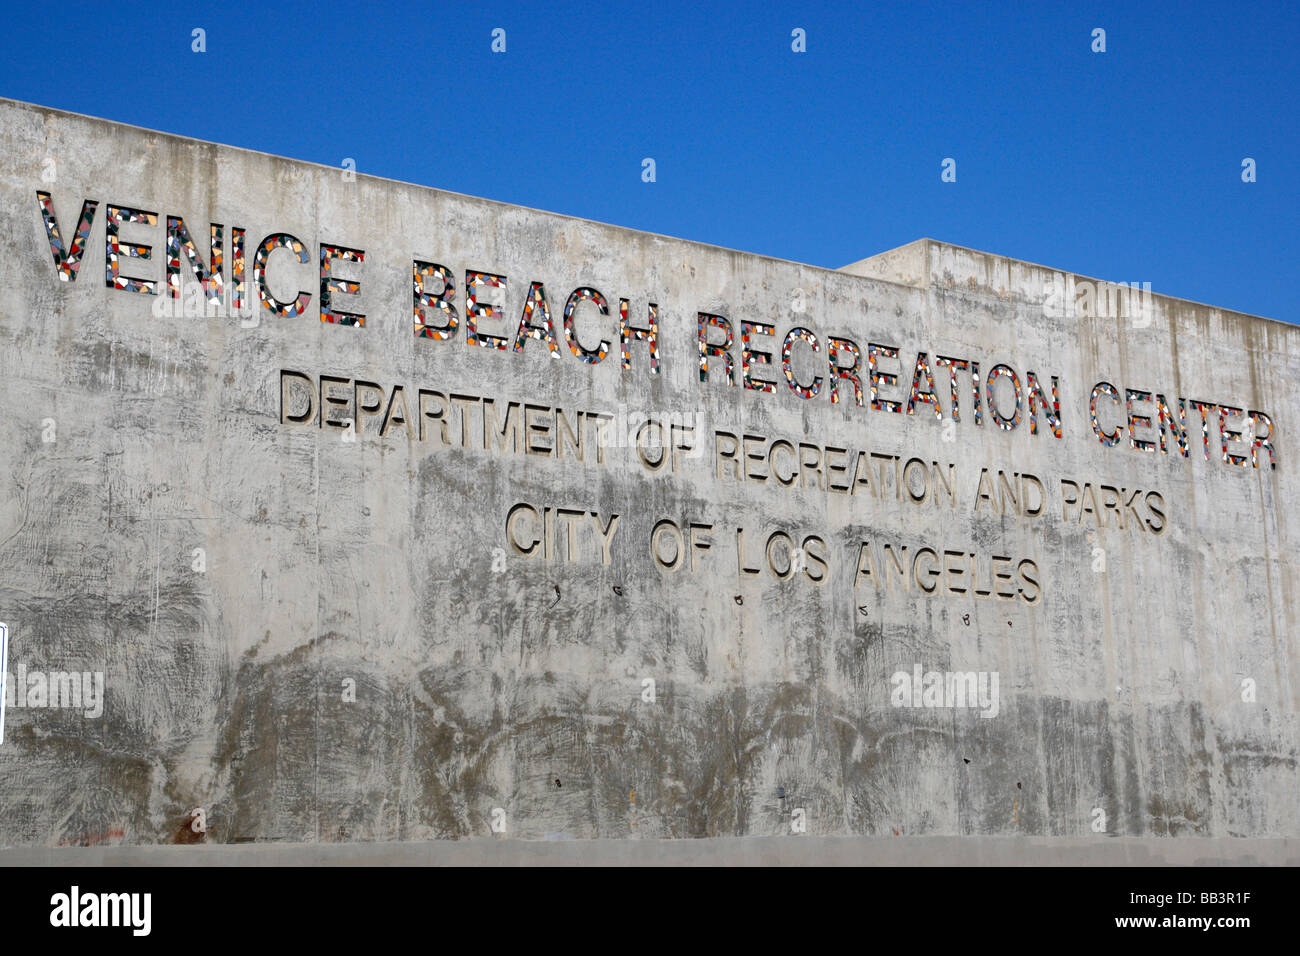 Venice Beach Freizeit center Los Angeles Kalifornien usa Stockfoto